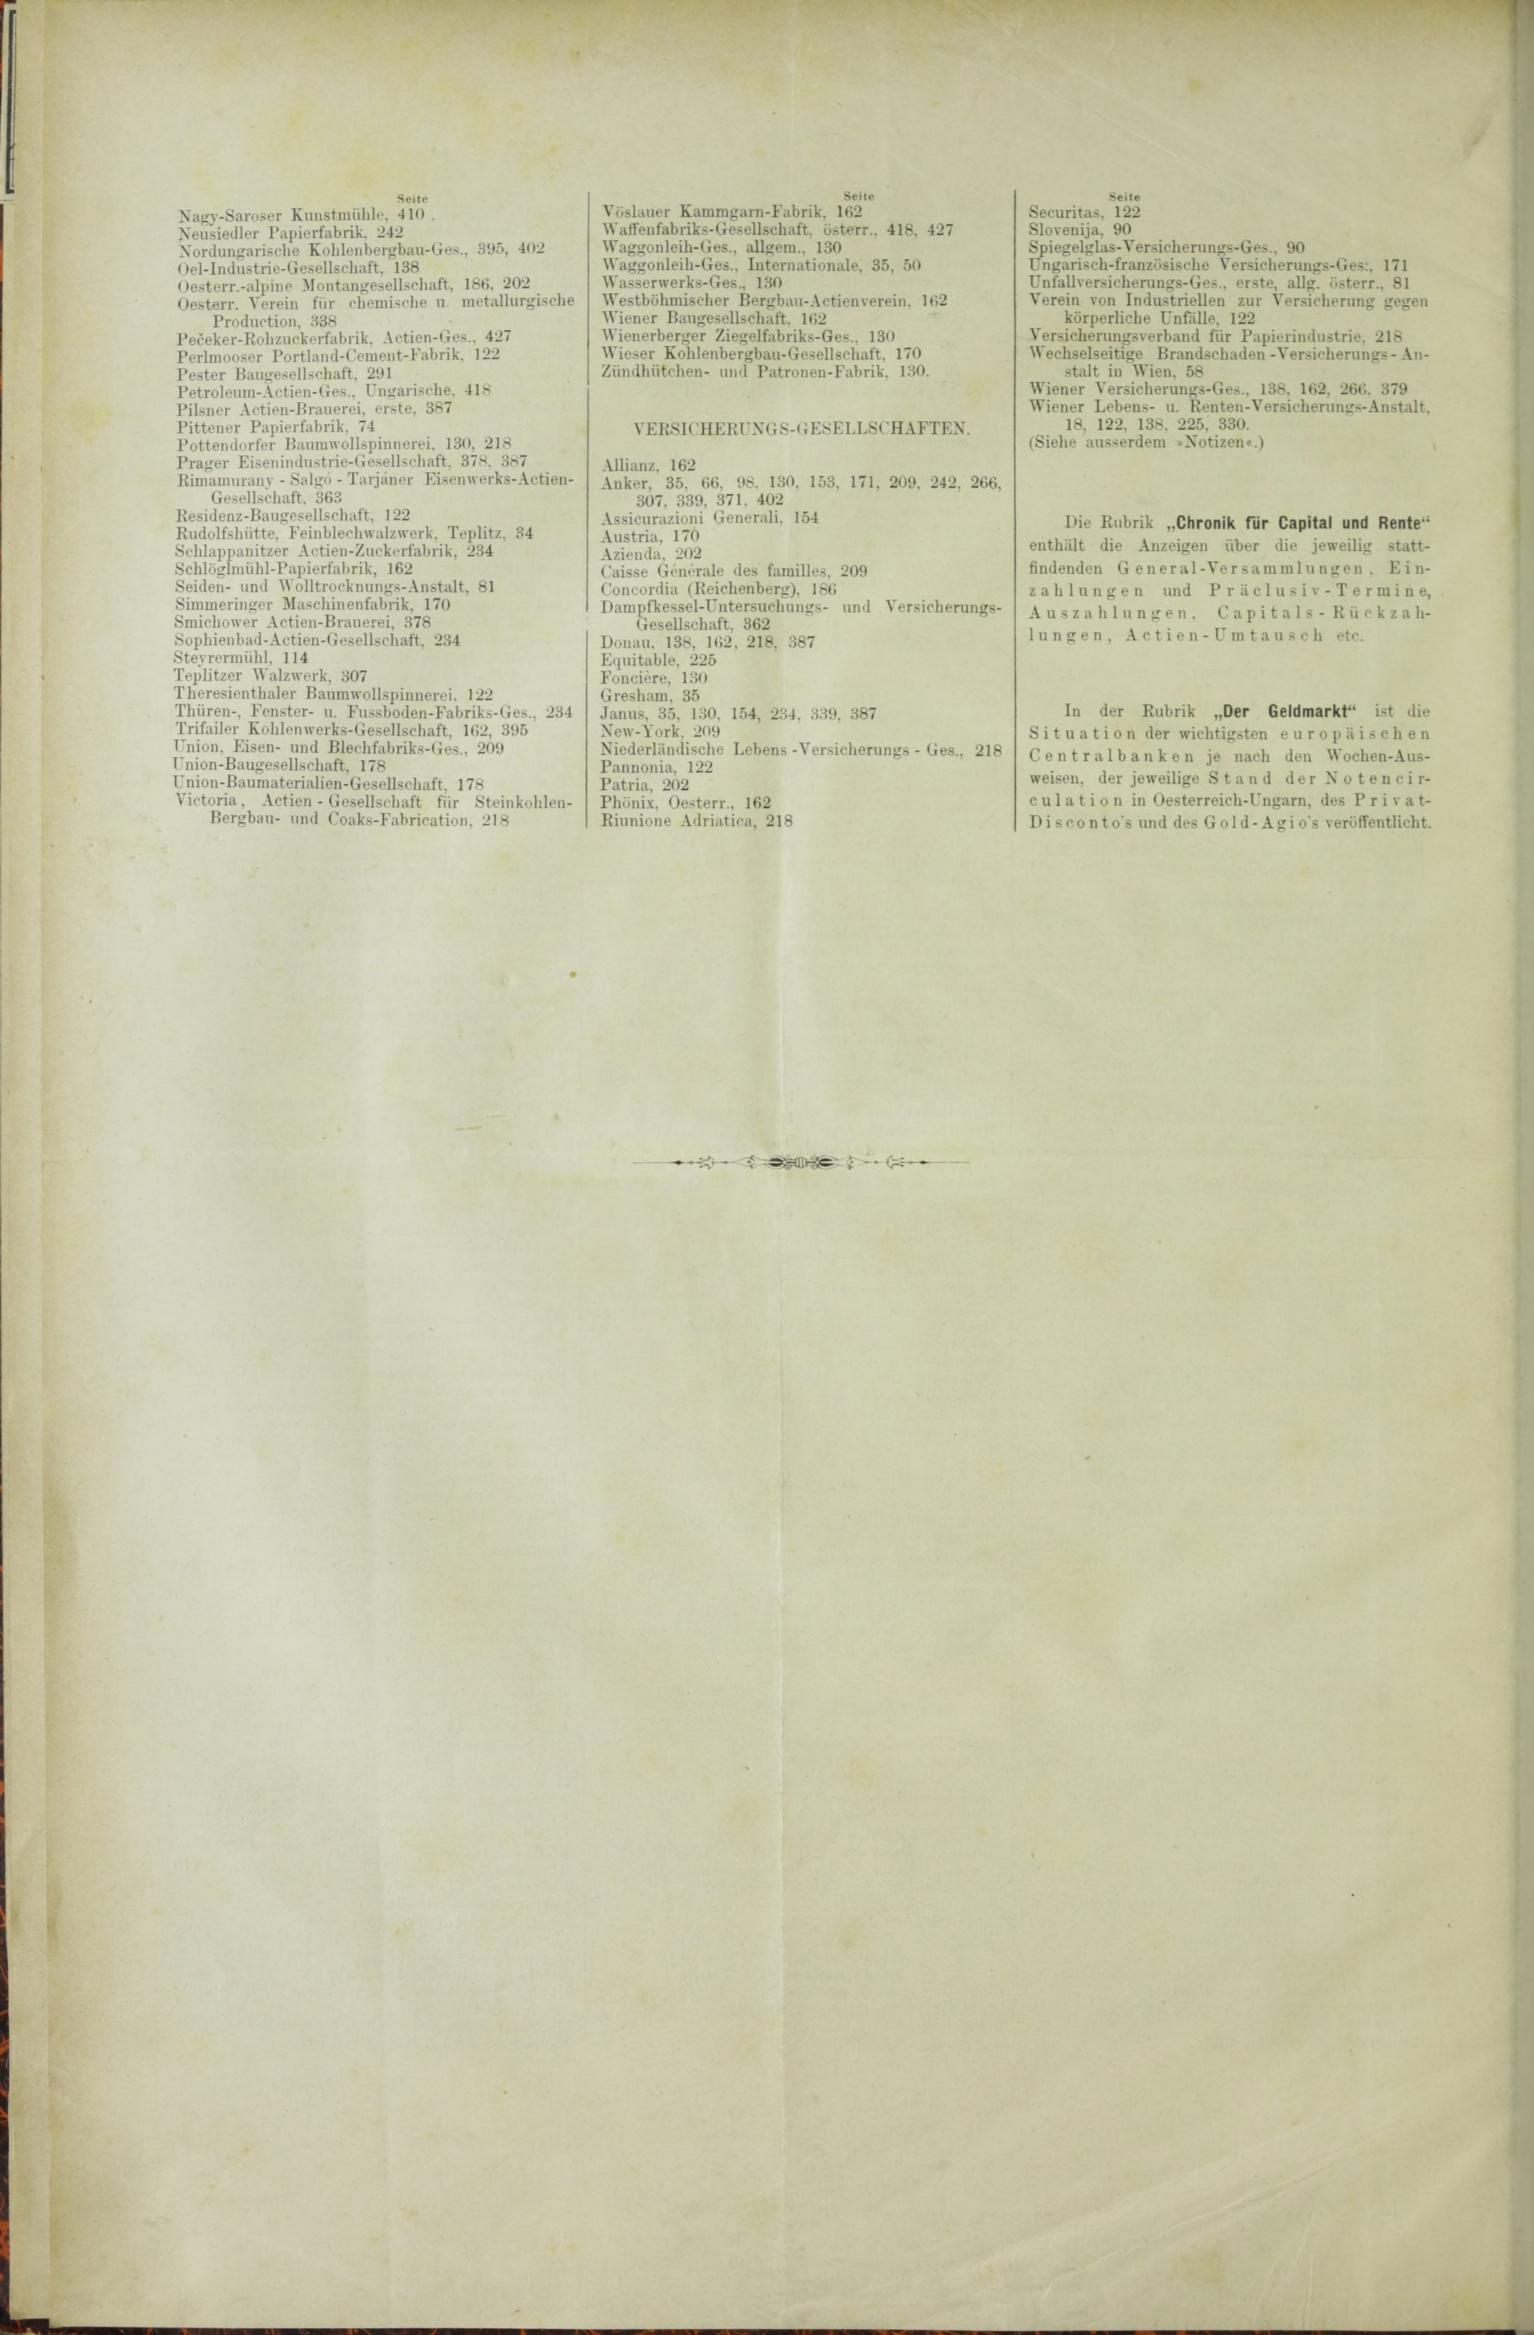 Der Tresor 02.04.1885 - Seite 12